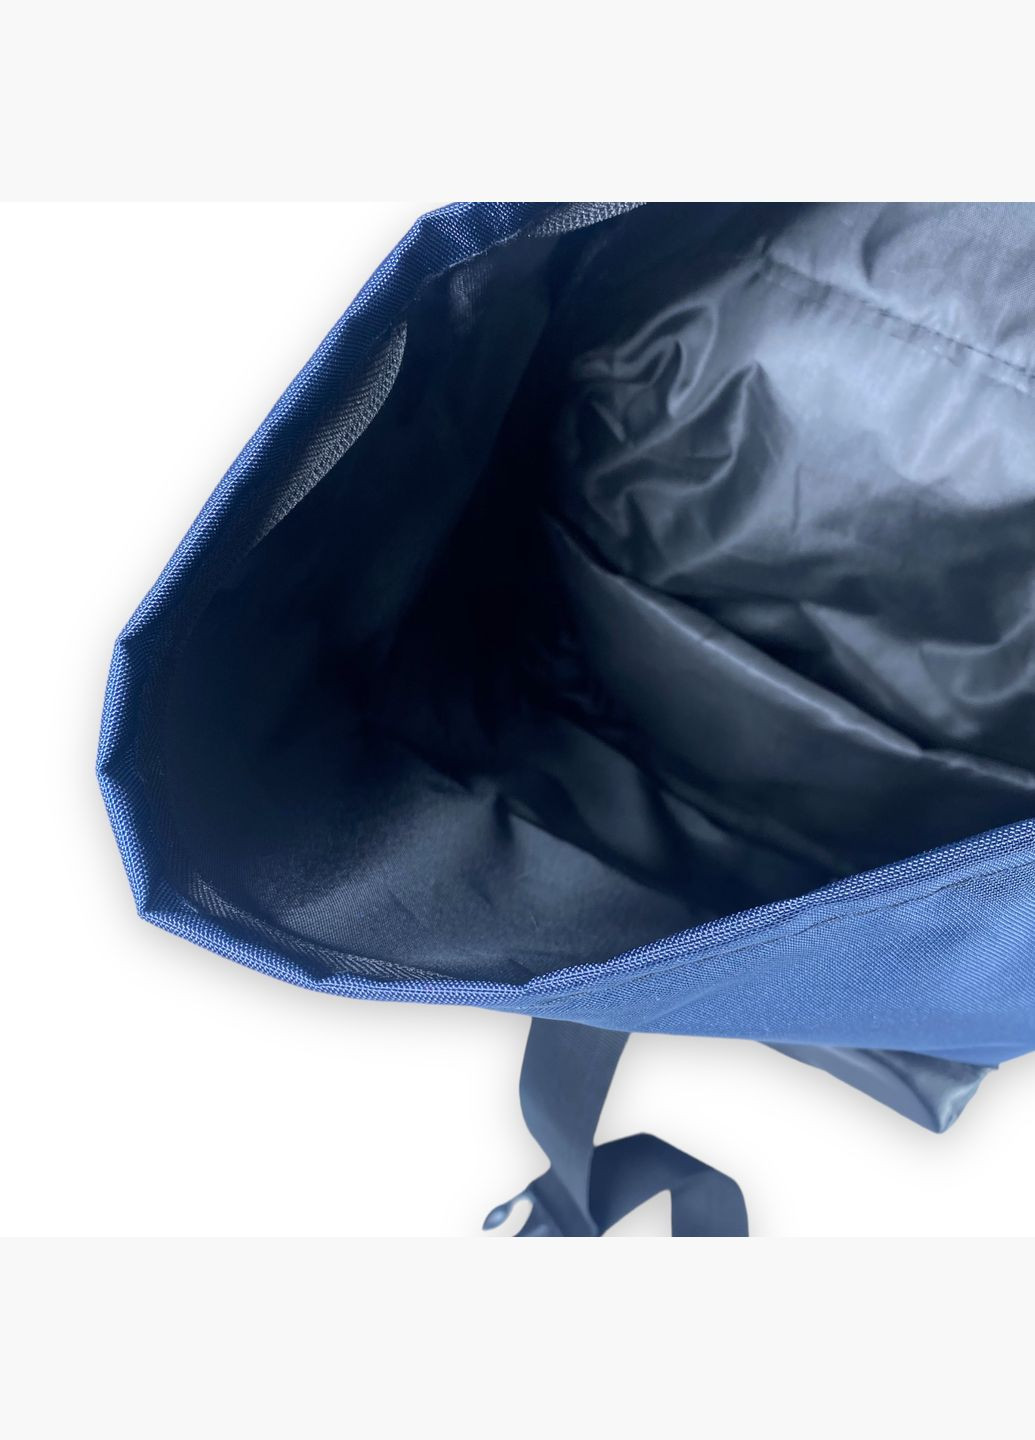 Міський рюкзак 10031 один відділ фронтальні бічні задні кишені розміри: 58*30*17, синій BagWay (285814816)